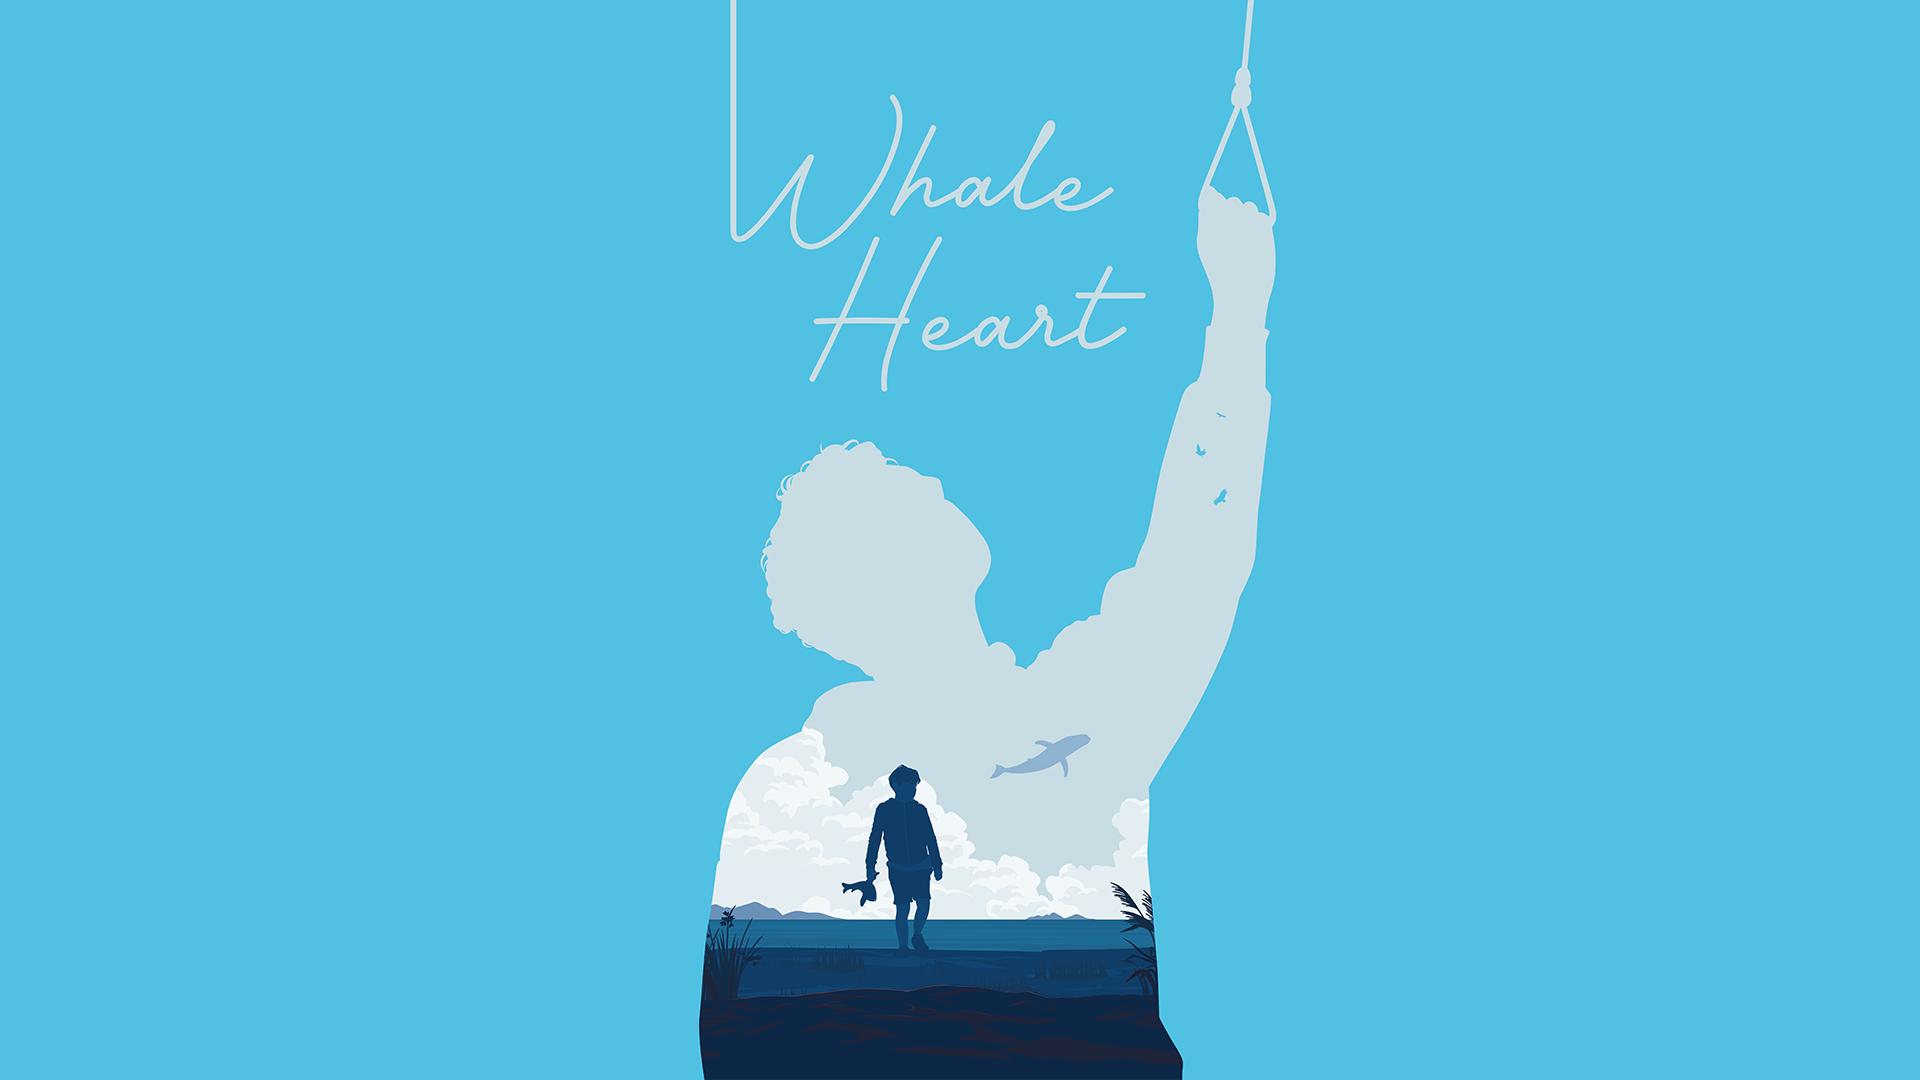 Whale Heart